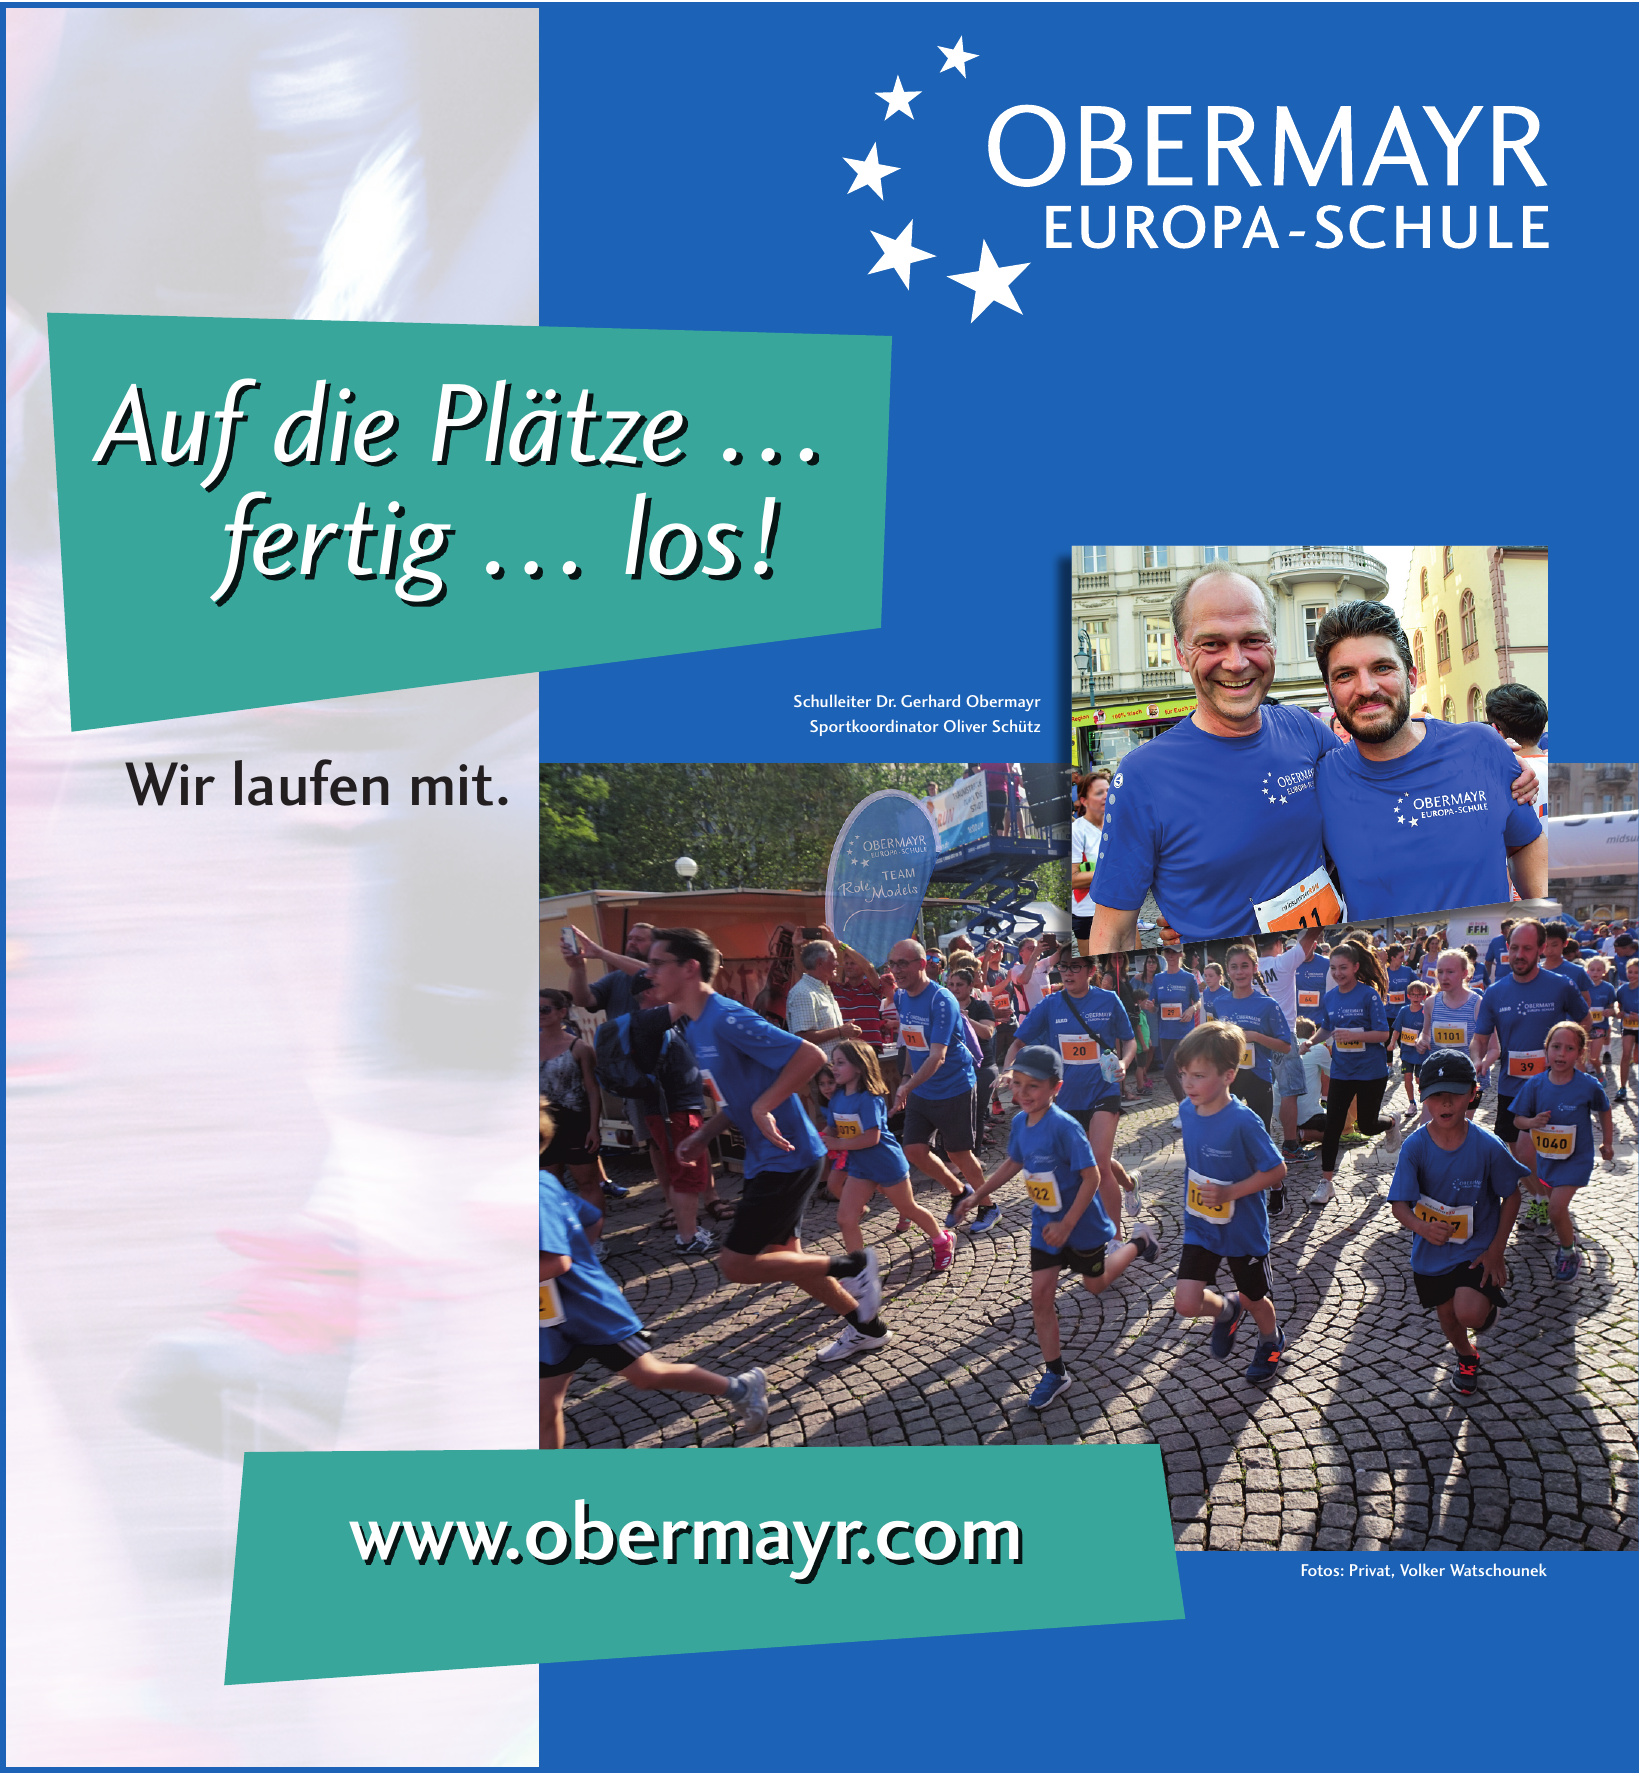 Obermayr Europa-Schule